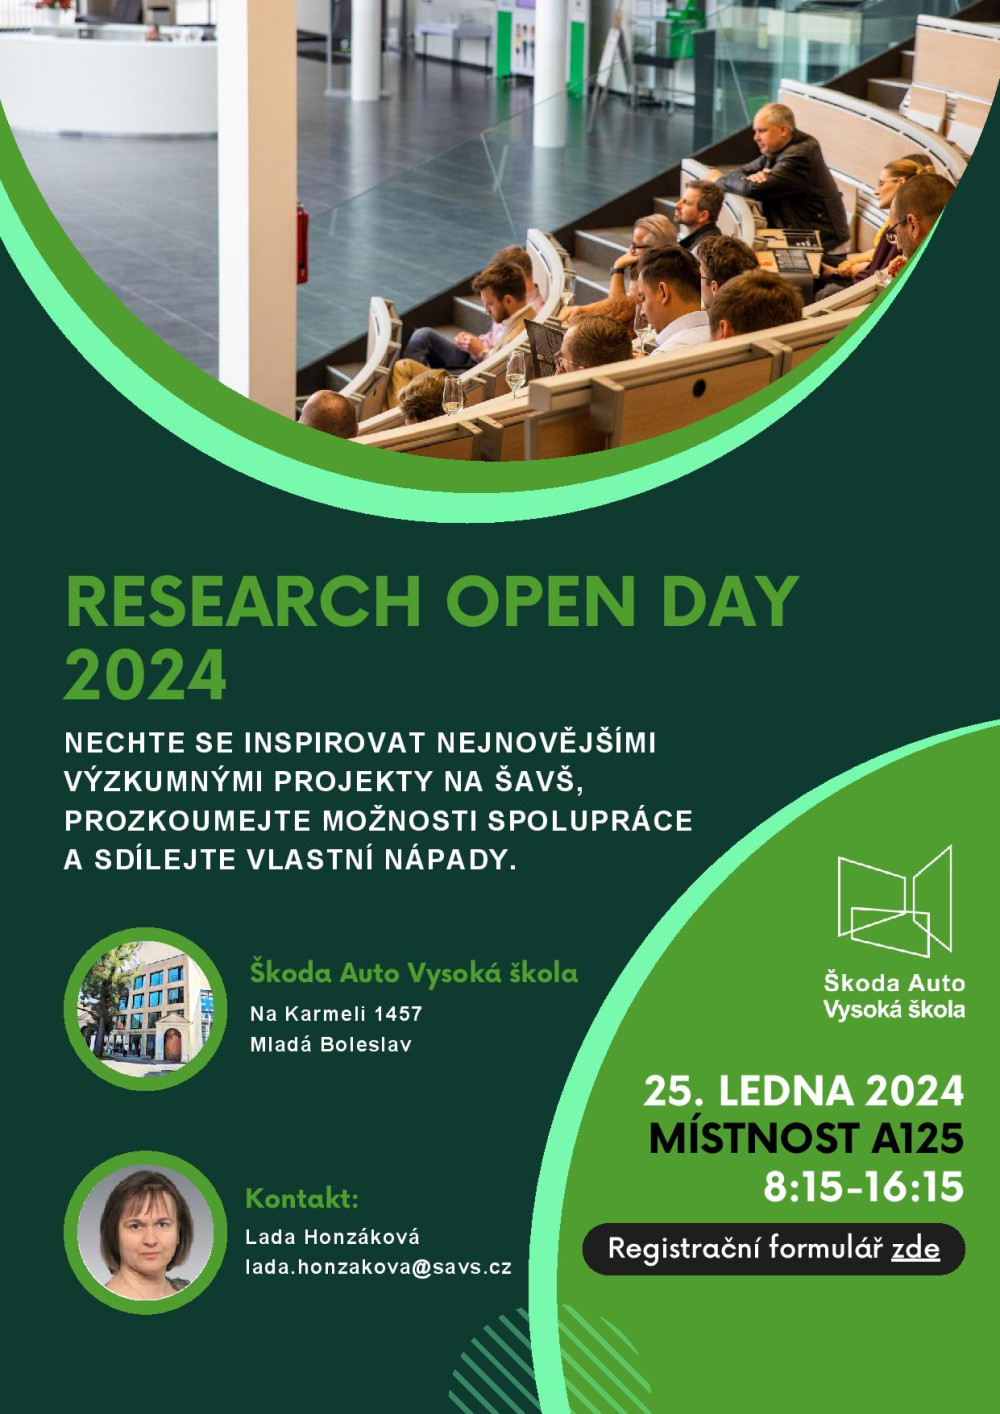 Research open day_pozvánka-page-001.jpg